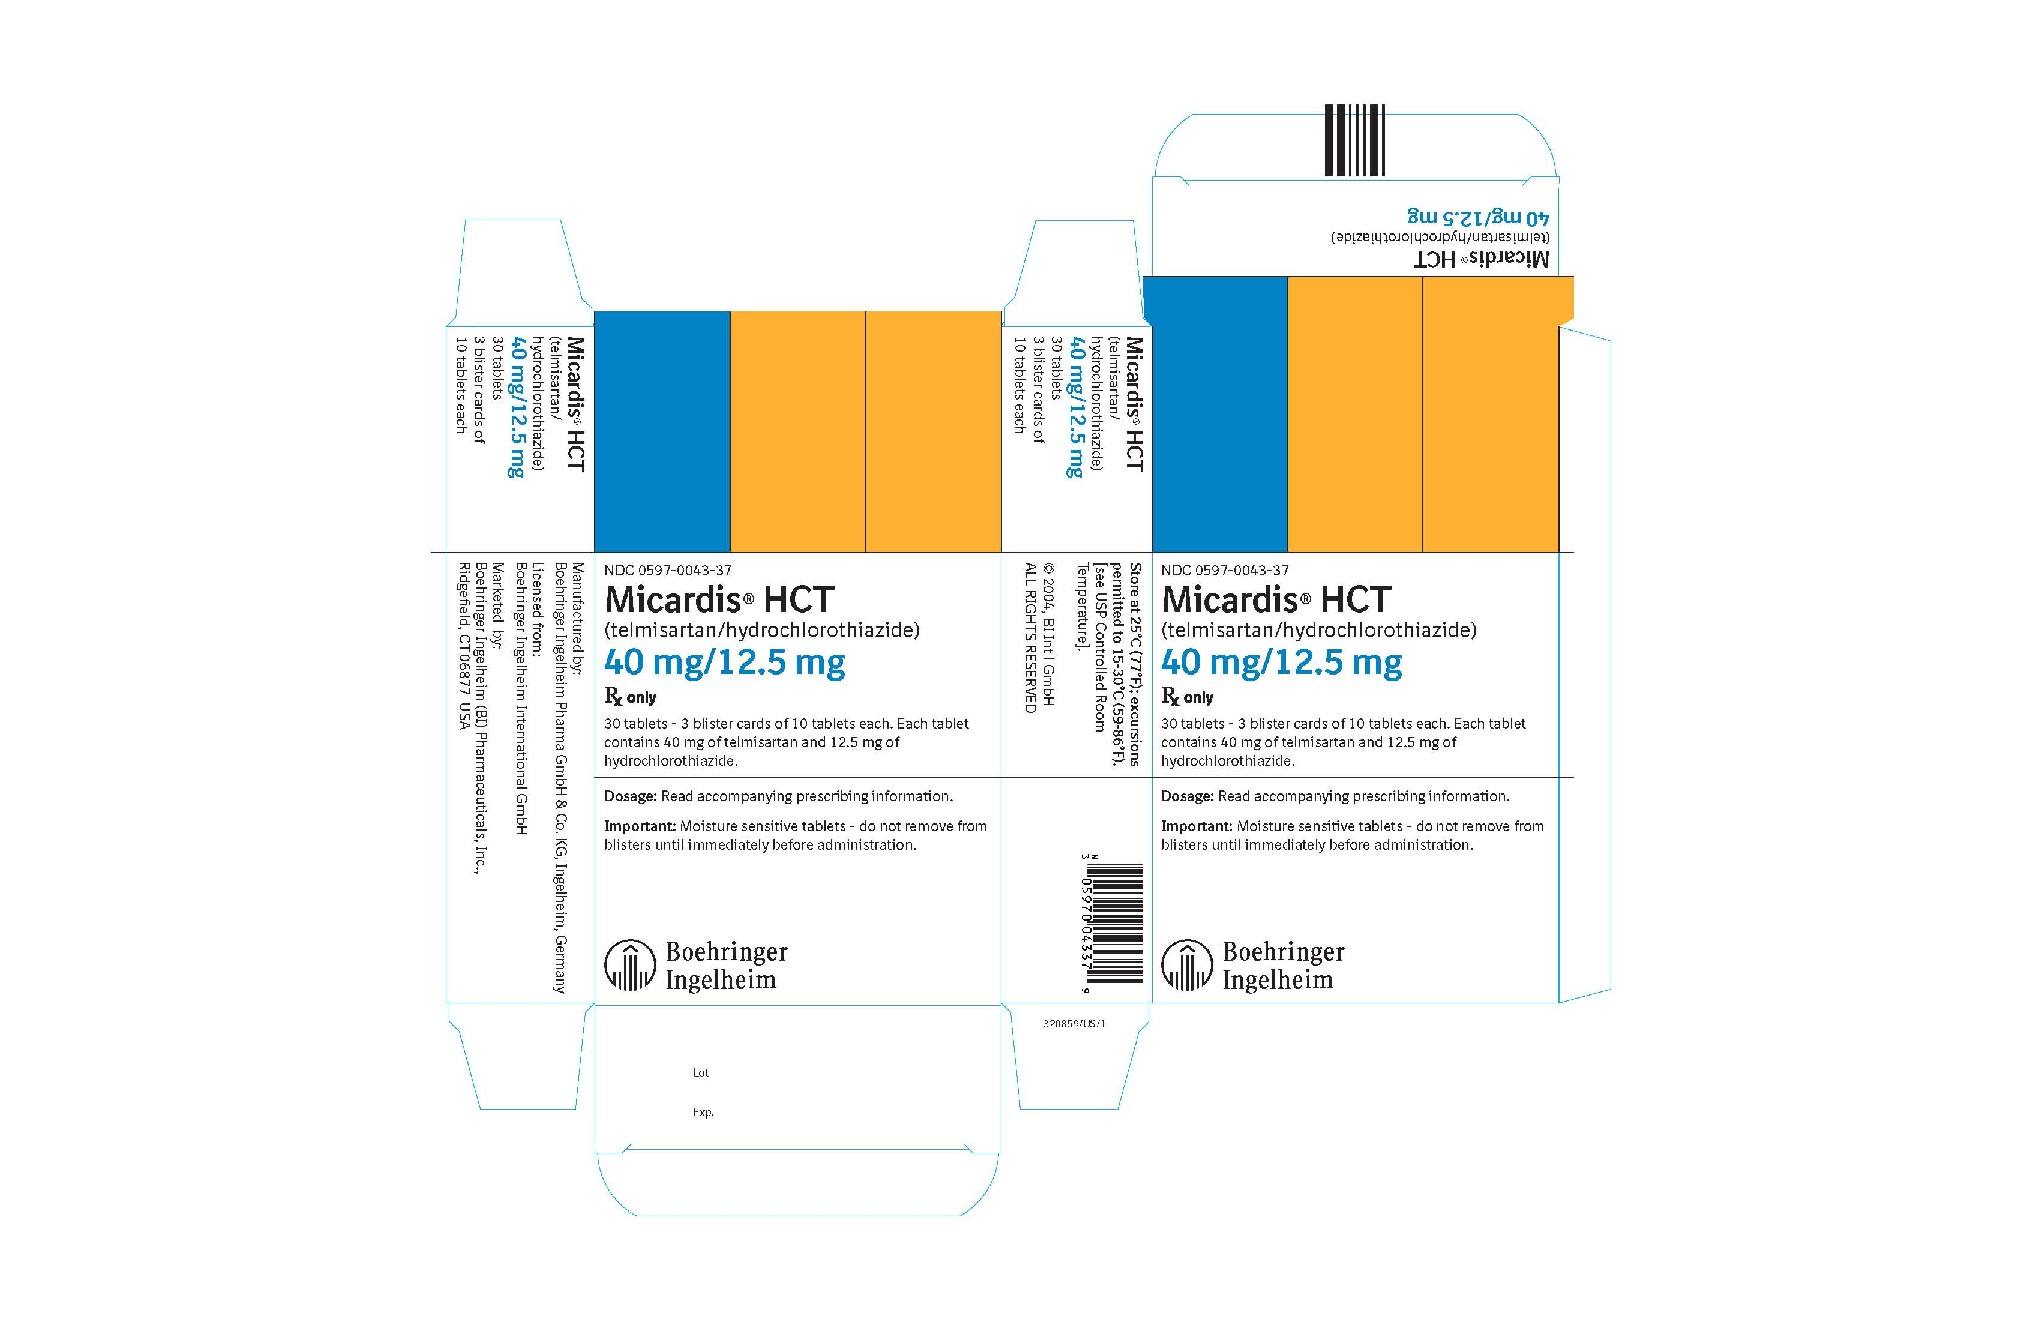 Micardis HCT 40 mg/12.5 mg 30 Tablets NDC 0597-0043-37